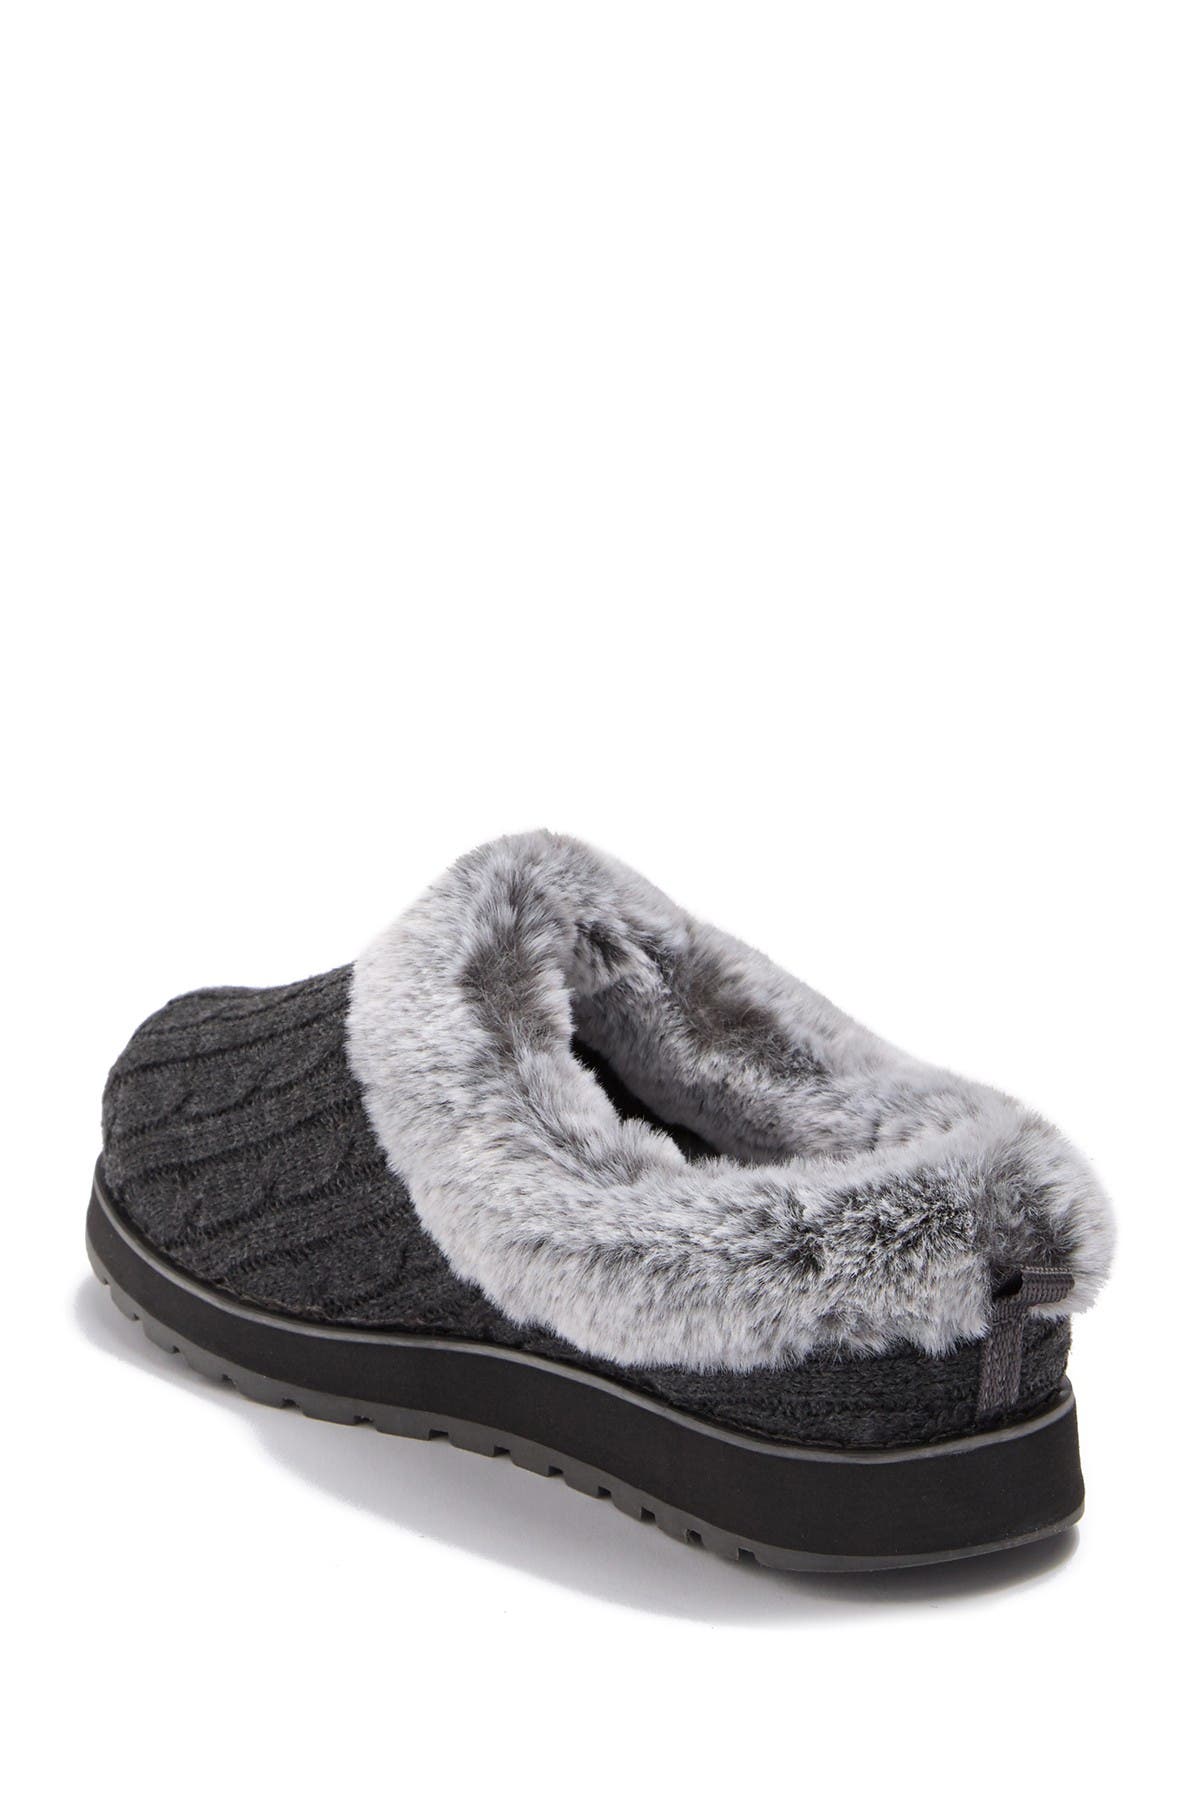 skechers faux fur slippers